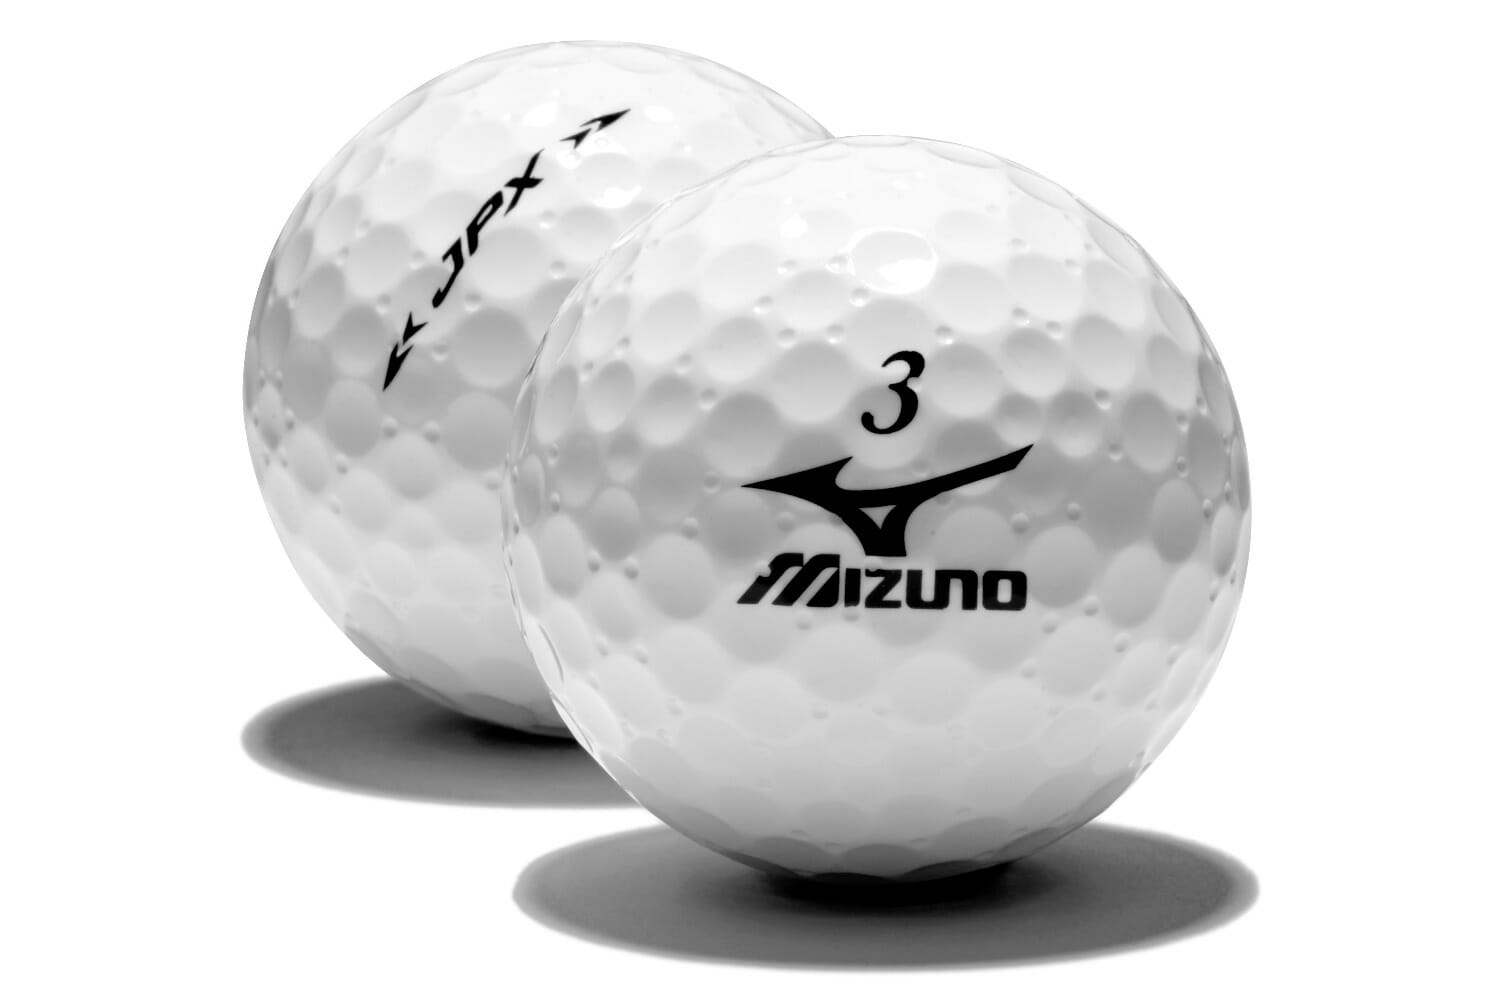 Mizuno launch new JPX-S golf ball